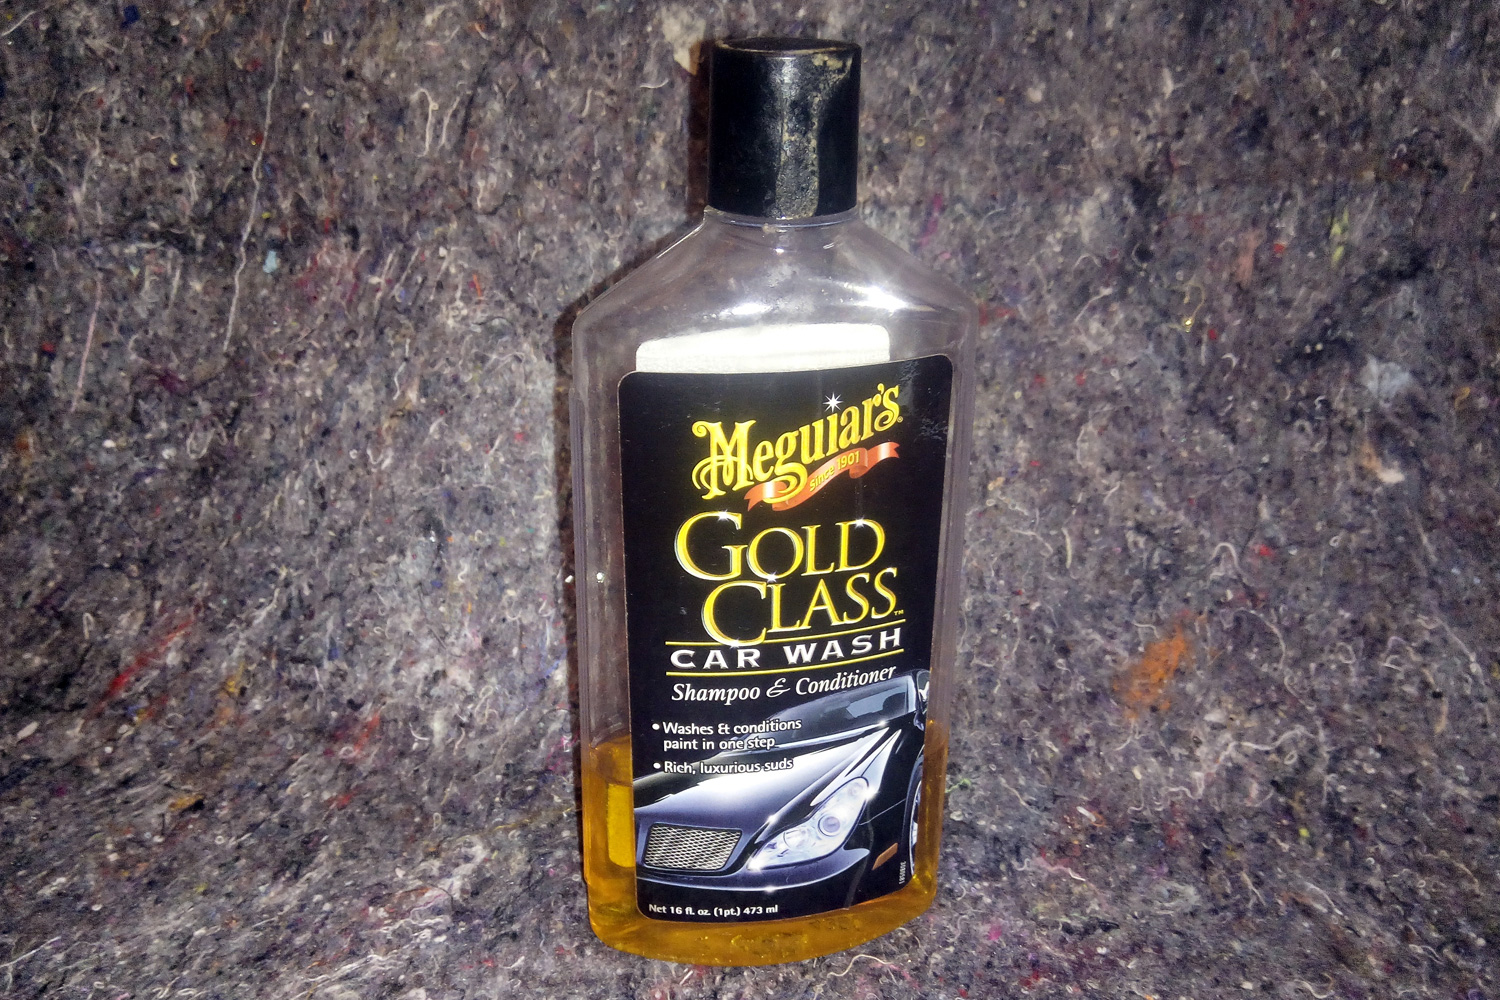 Unsere Erfahrung mit Autoshampoo bei der Autowäsche: Meguiar’s Gold Class Car Wash